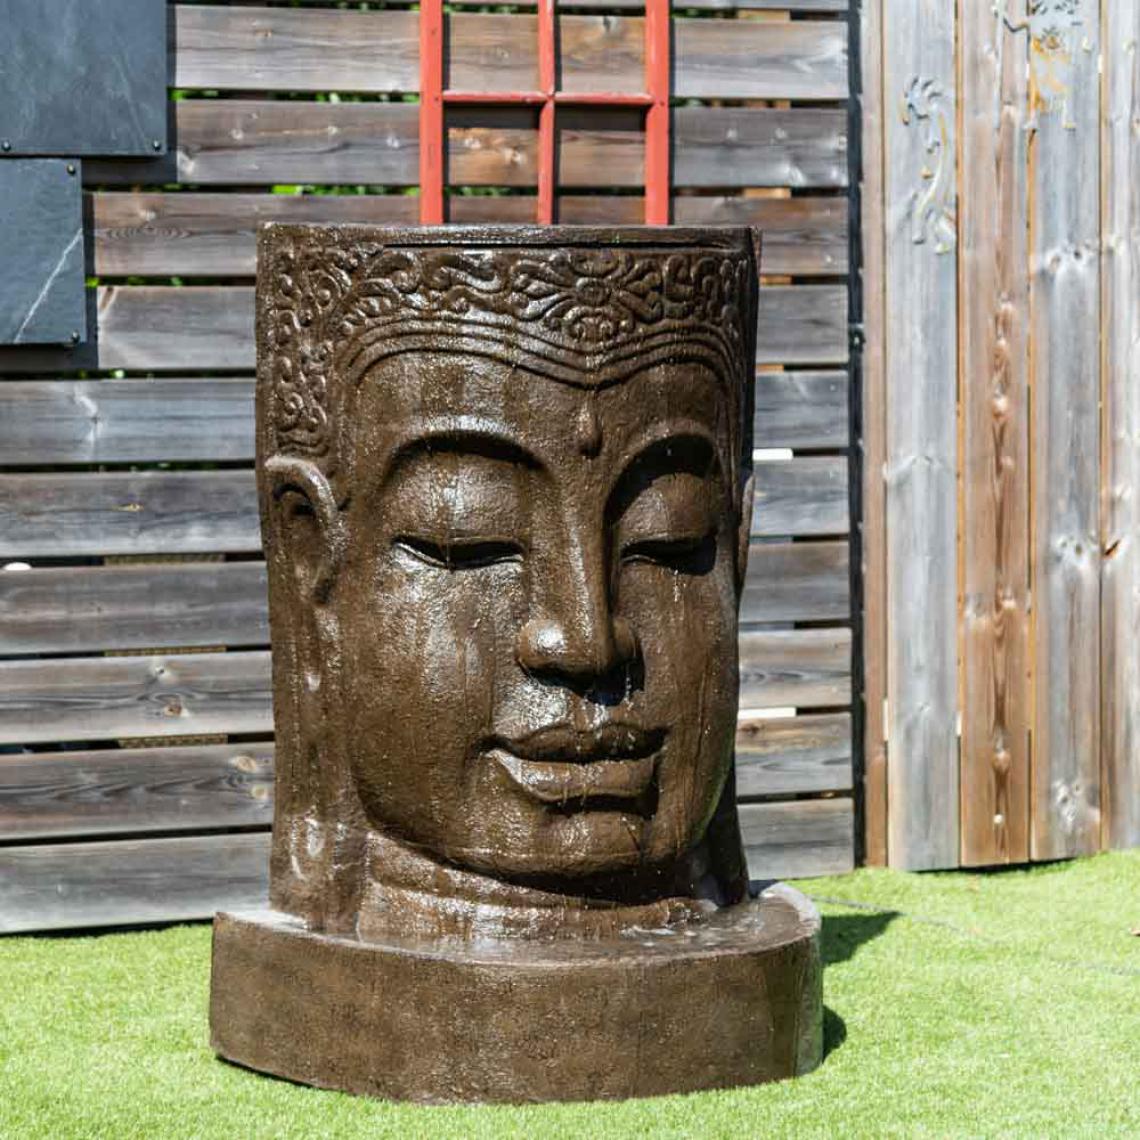 Wanda Collection - Fontaine de jardin mur d'eau visage de Bouddha 1 m 20 brun antique - Fontaine de jardin, puit